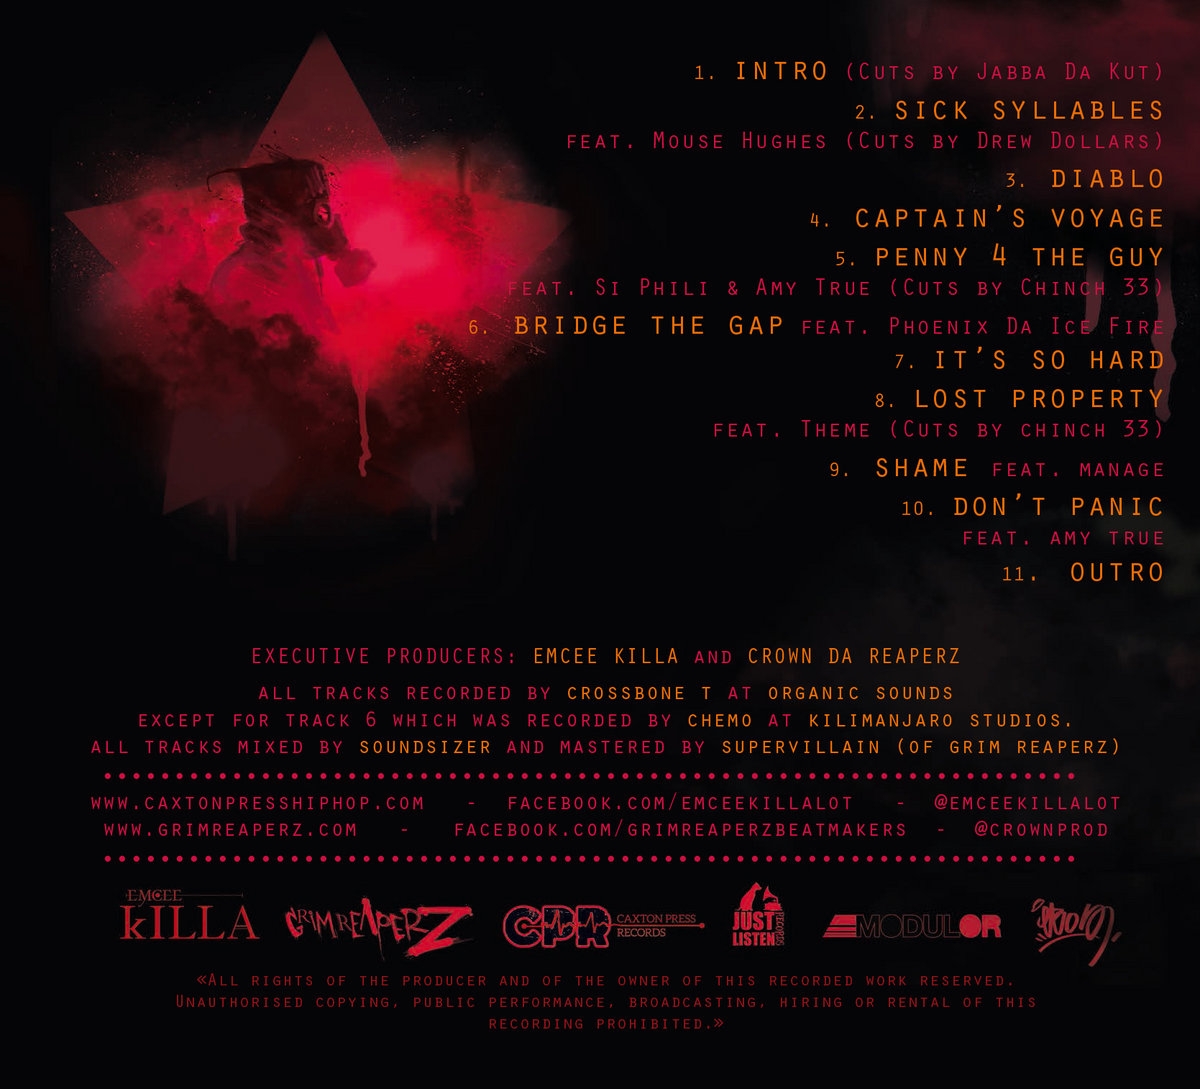 Album Vinyle "Grim Reaperz & Emcee Killa ‎- Zapatista" de grim reaperz sur Scredboutique.com